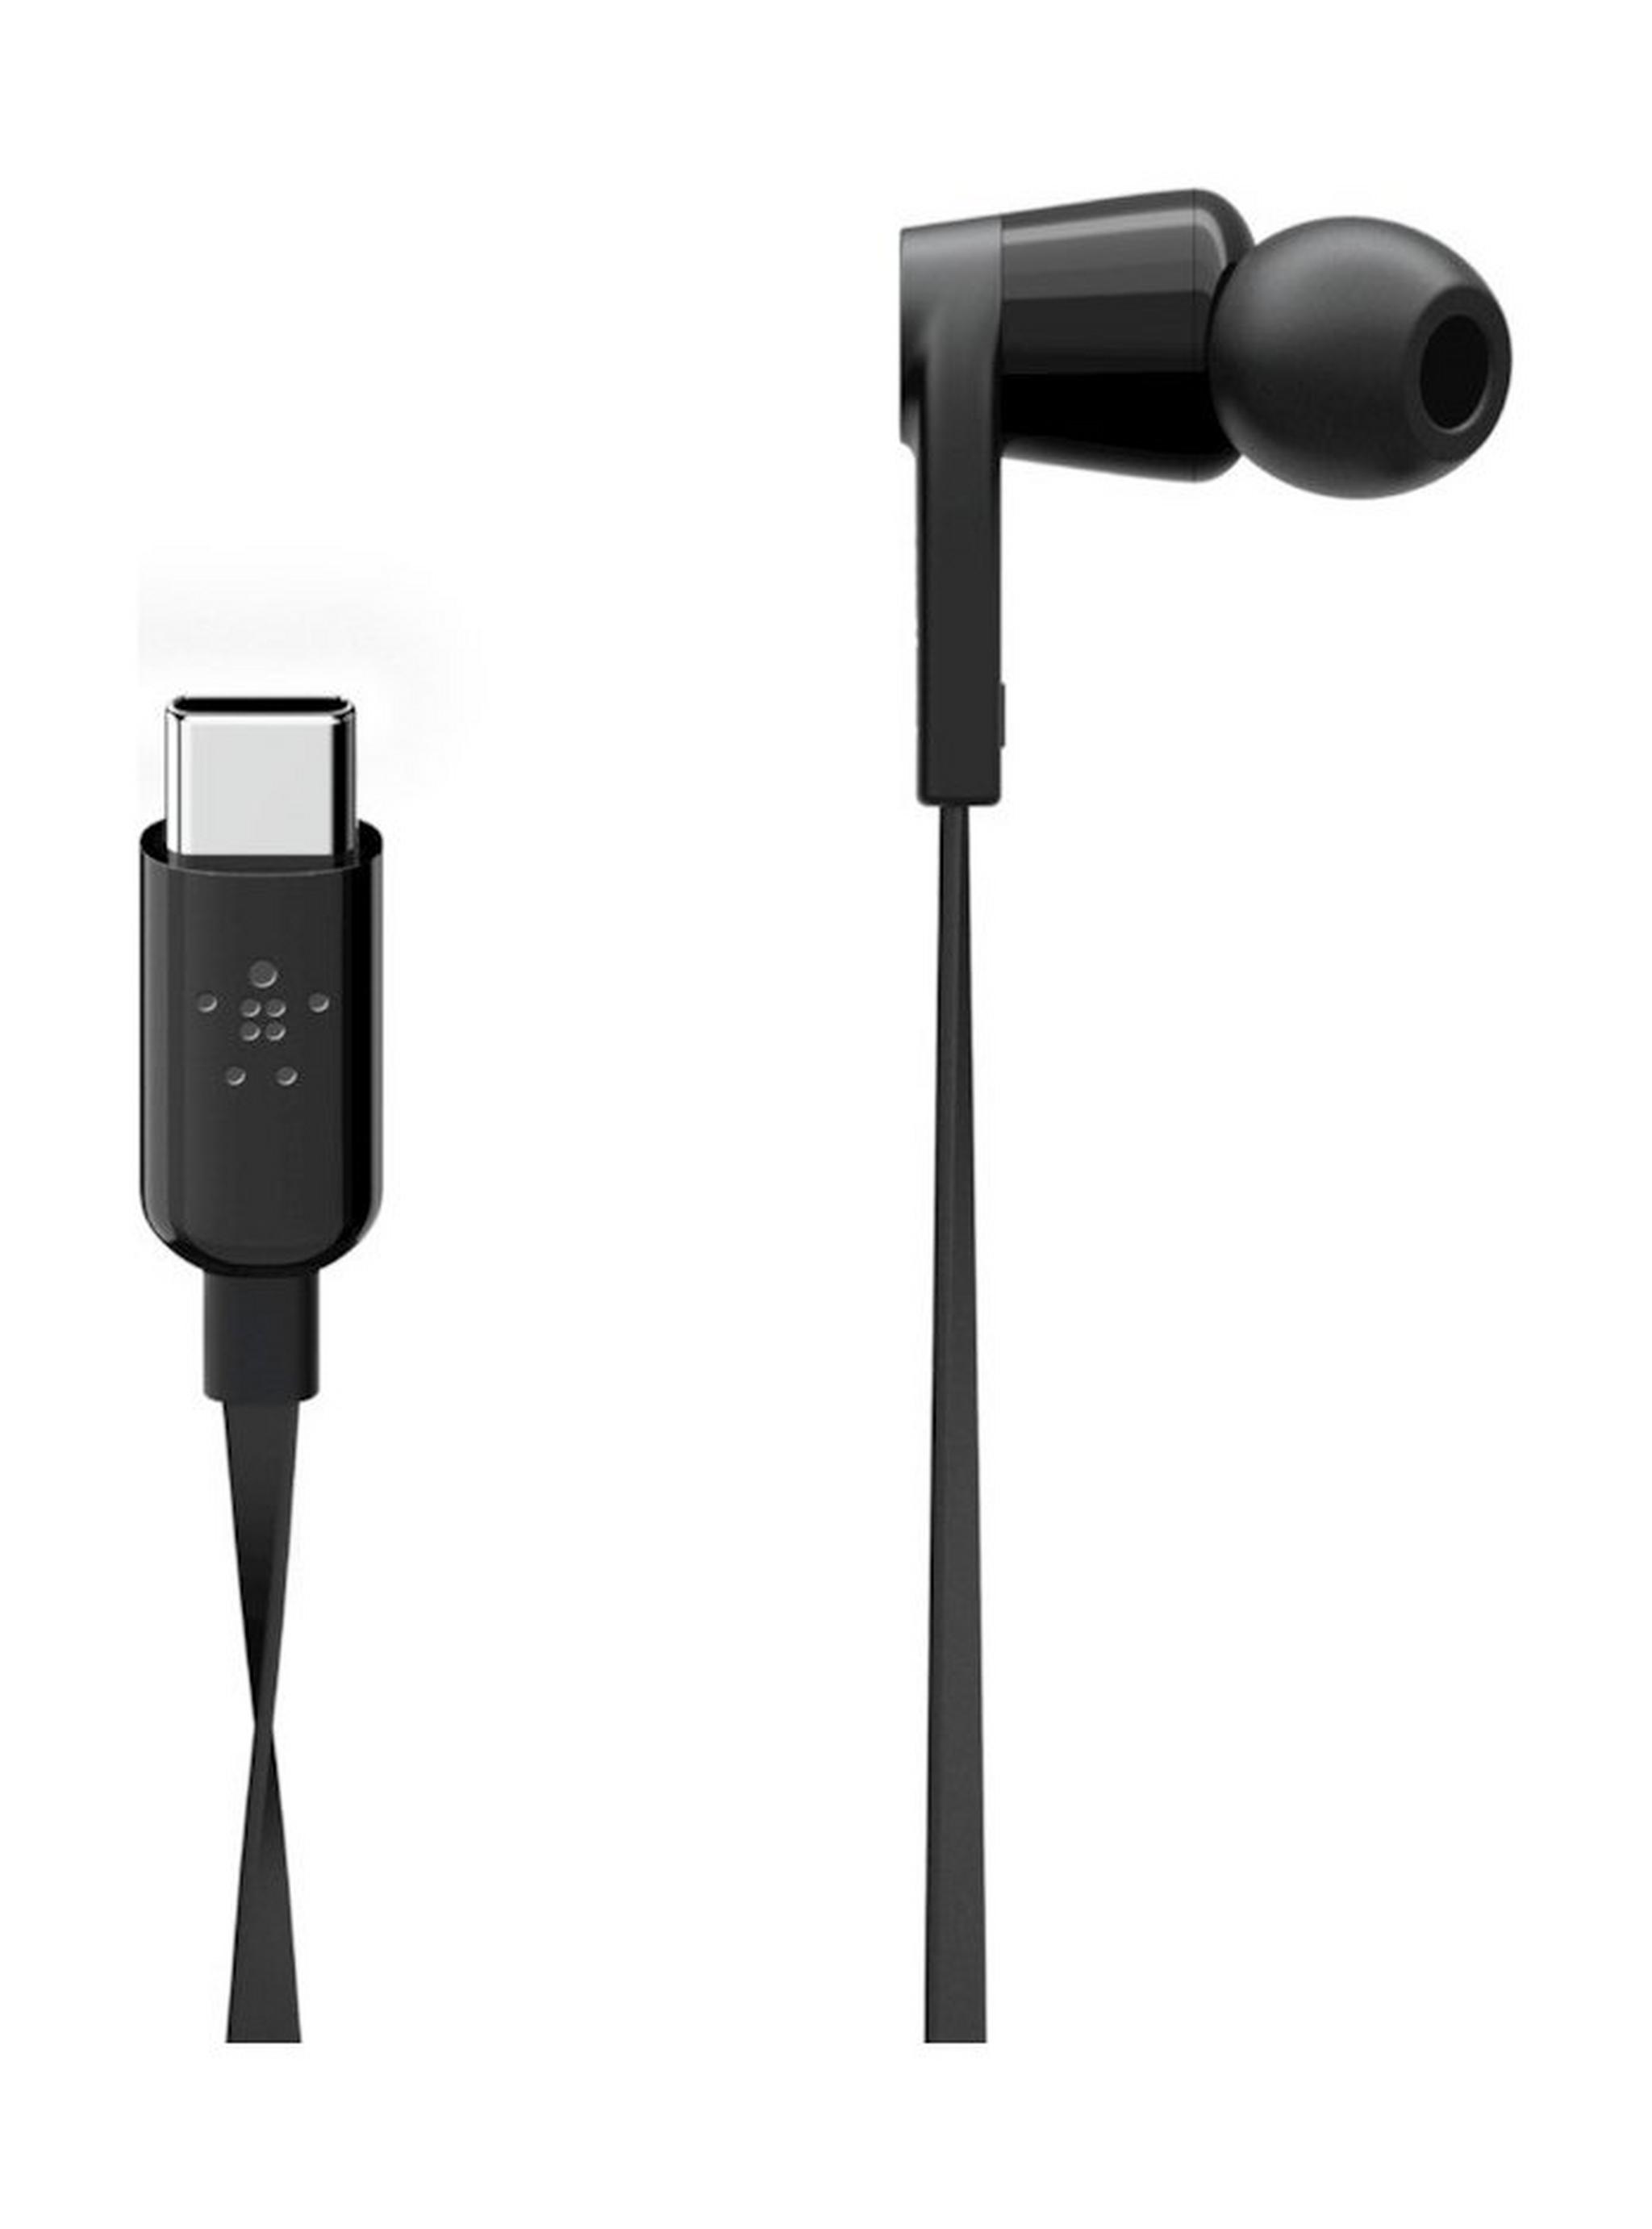 Belkin Rockstar Headphones with USB-C Connector - Black